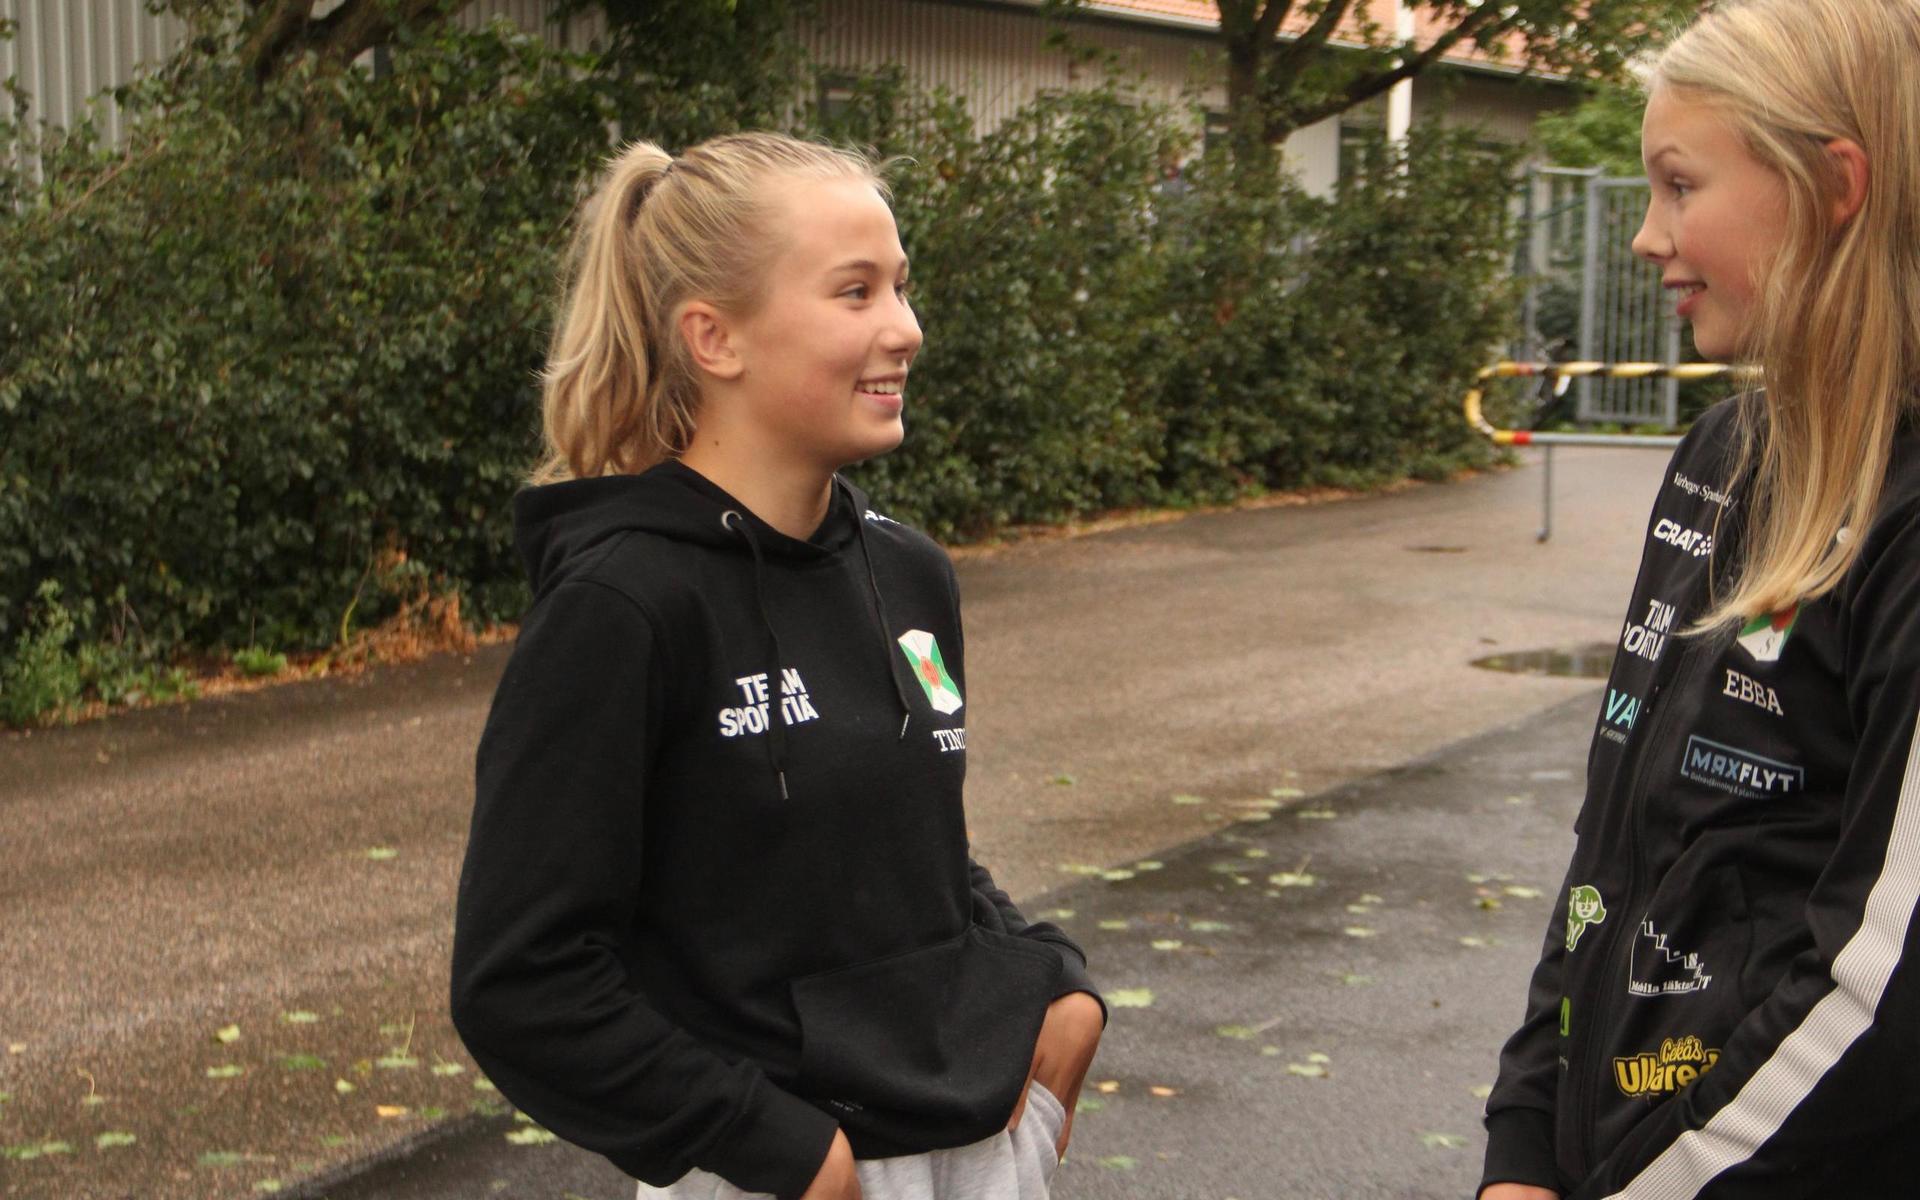 En brottartjej i Varbergs Bois har fått möjligheten att utvecklas och bli riktigt bra. Tindra Dalmyr , till vänster, är i helgen uttagen till ett ungdomsläger i Rydebäck utanför Helsingborg. Här pratar hon med en annan talang, Ebba.